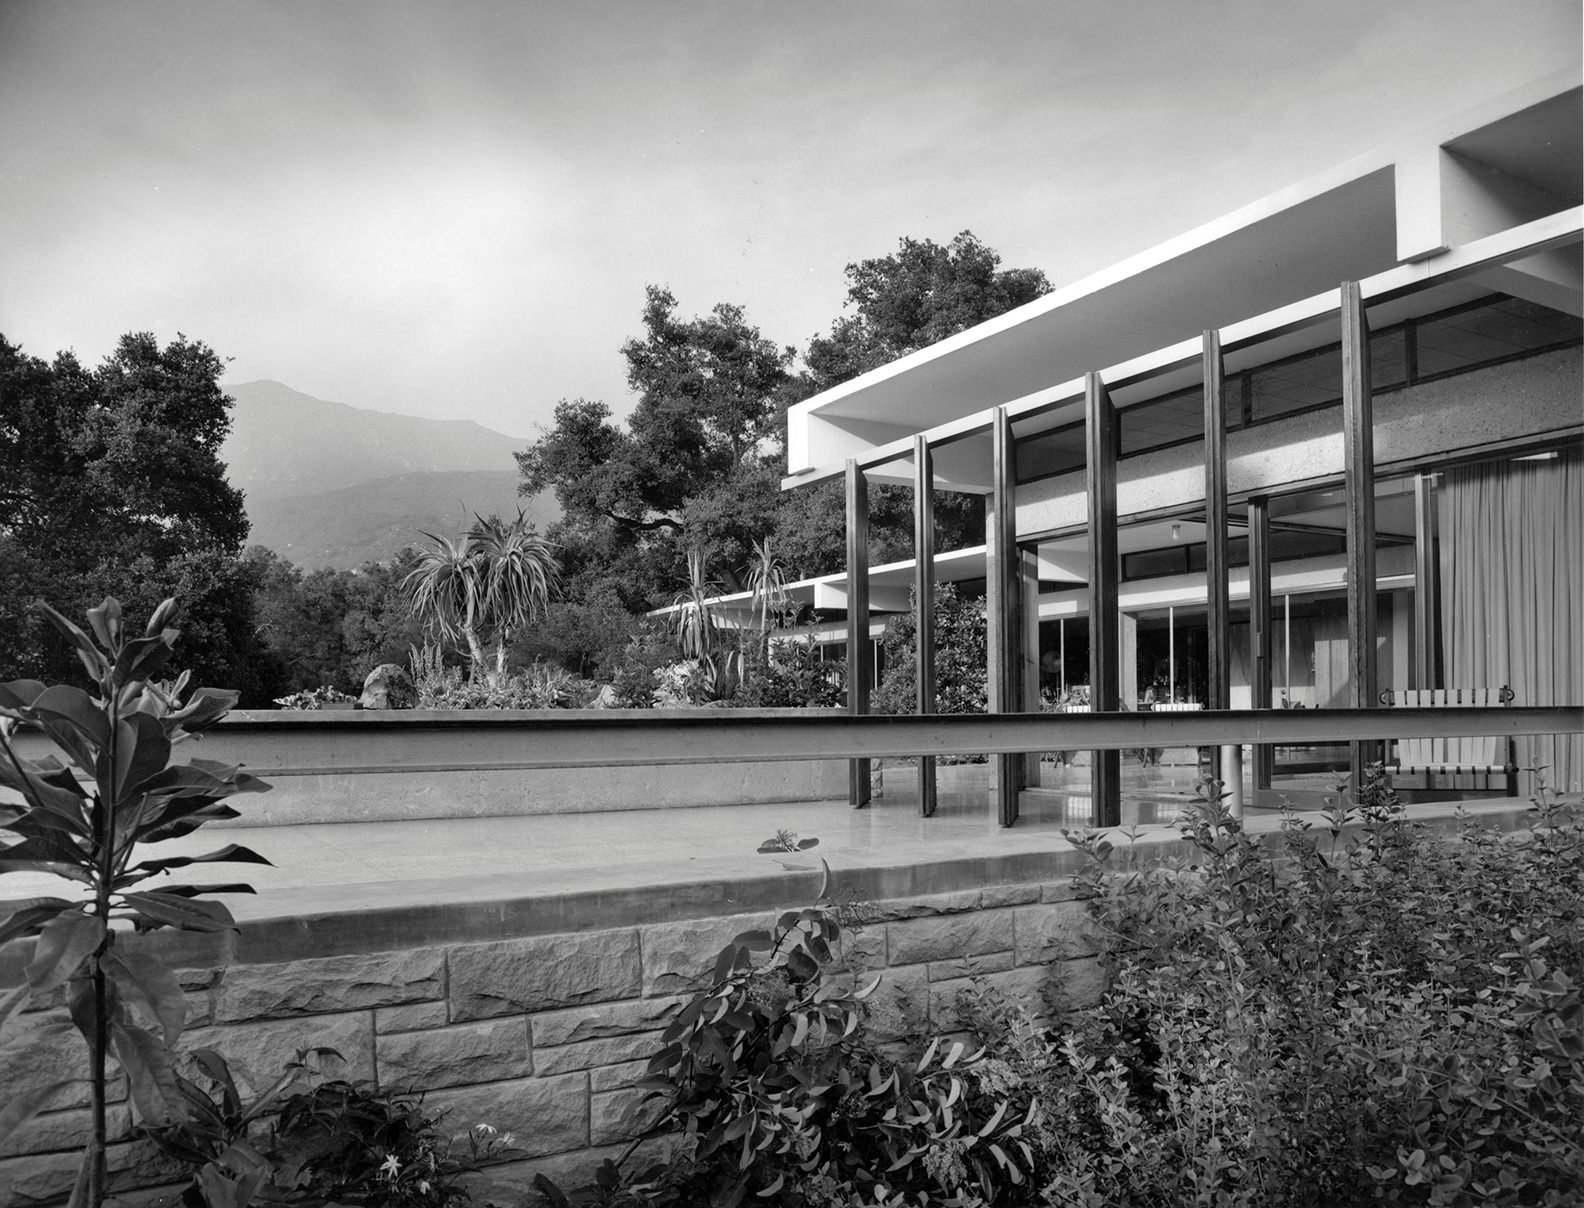 Piscina Casa en Montecido california diseñada por Richard Neutra